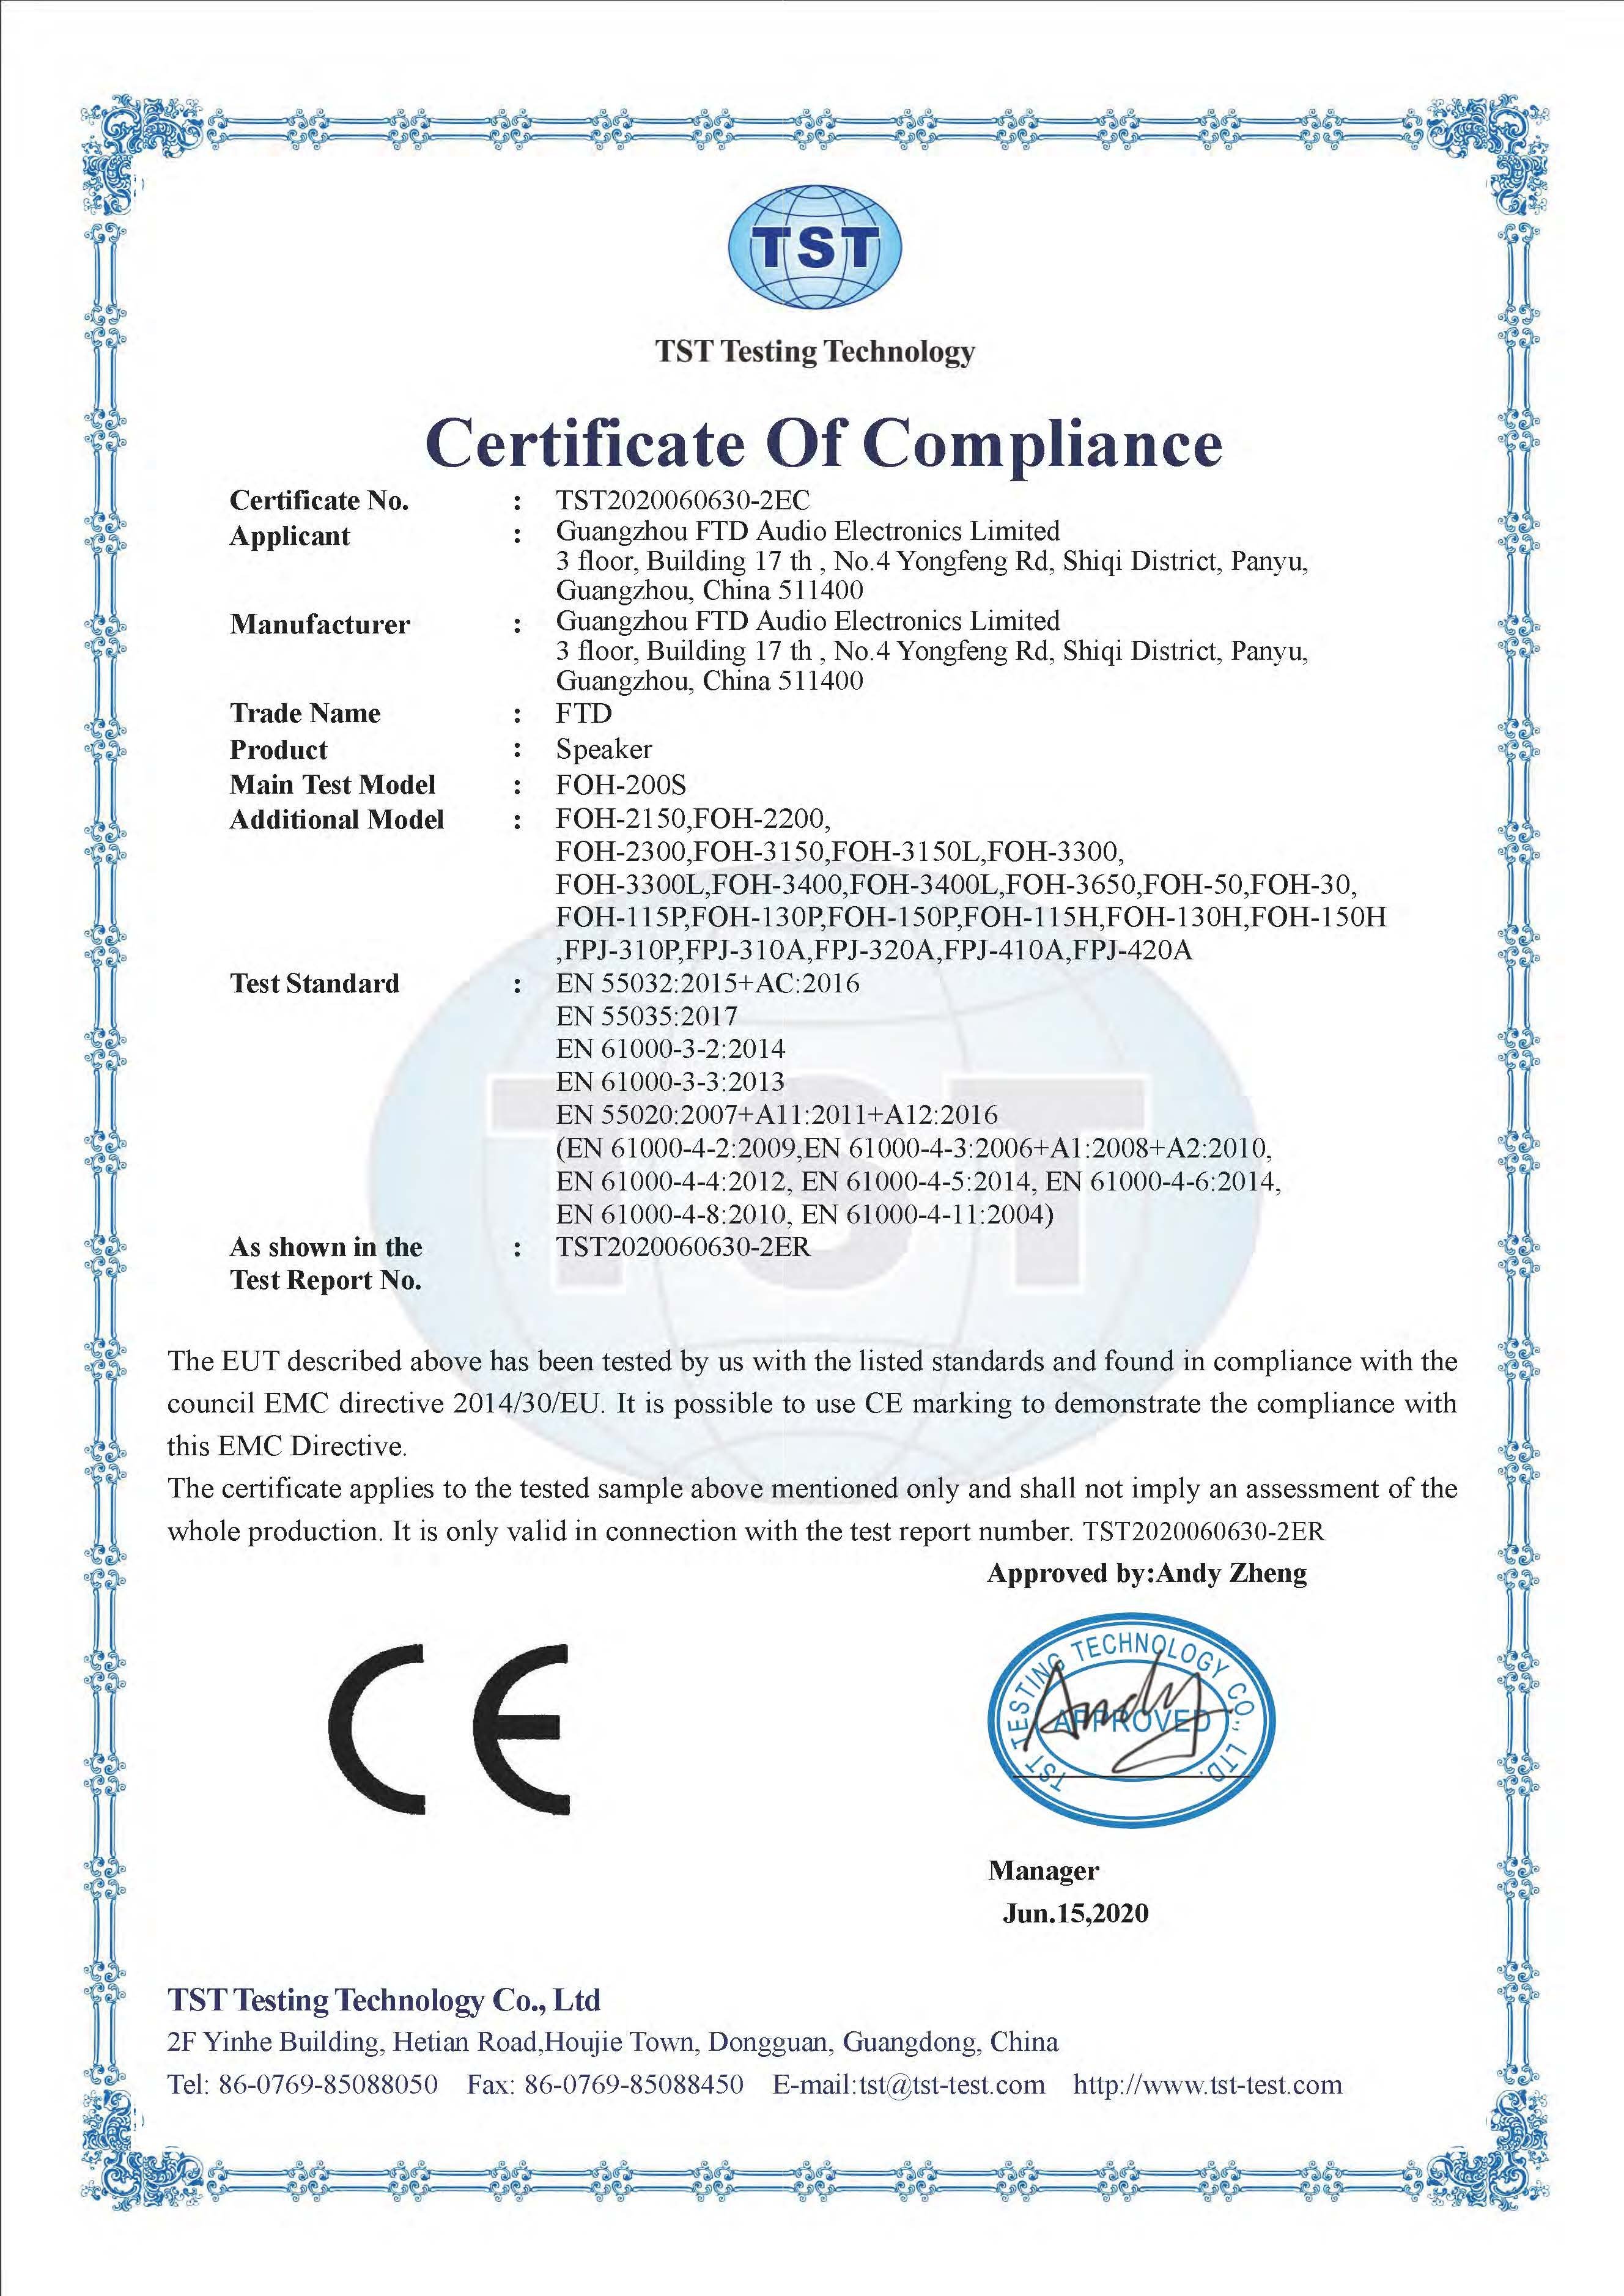 FTD horn speaker CE certificate